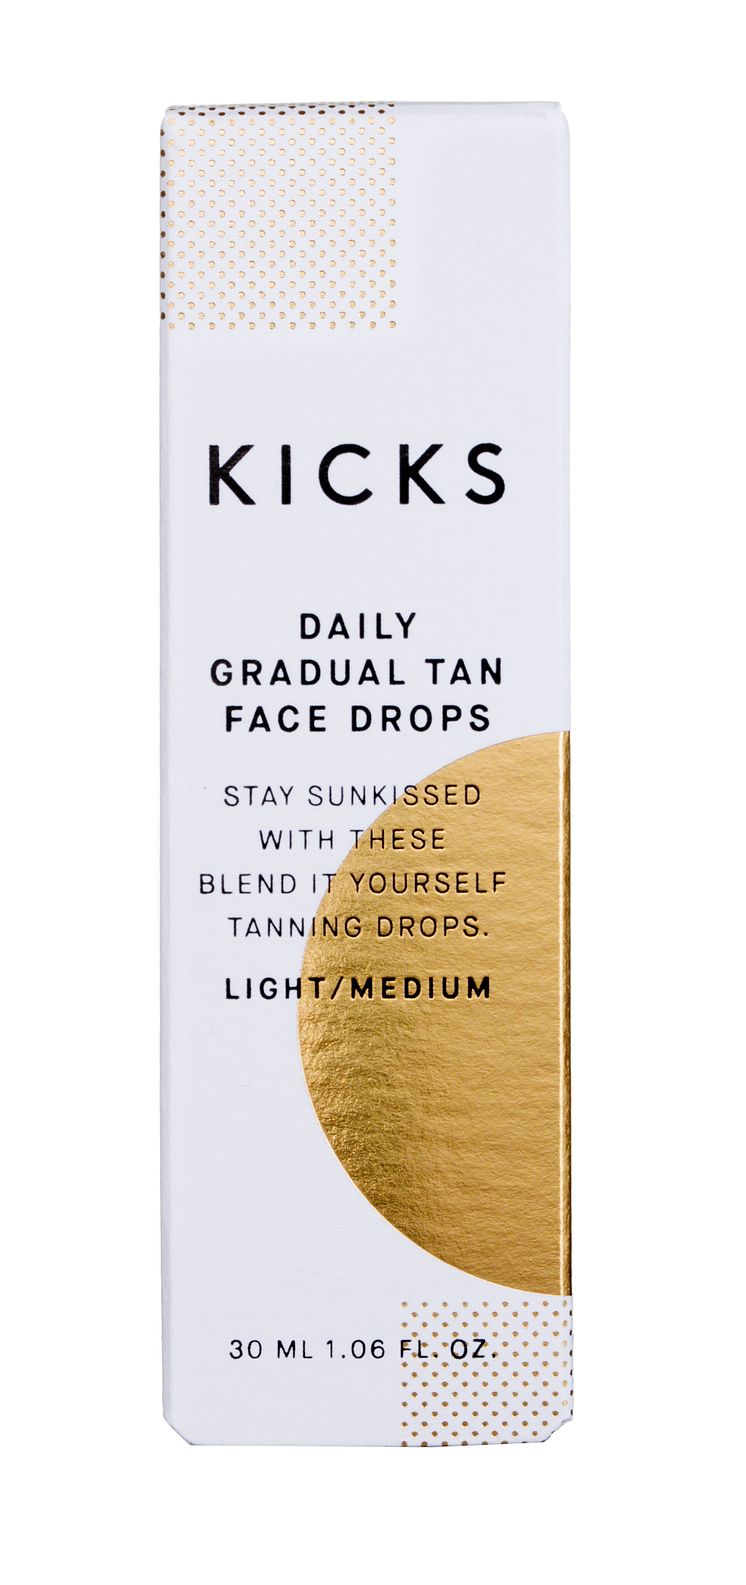 KICKS Daily Gradual Tan Face Drops LightMedium closed